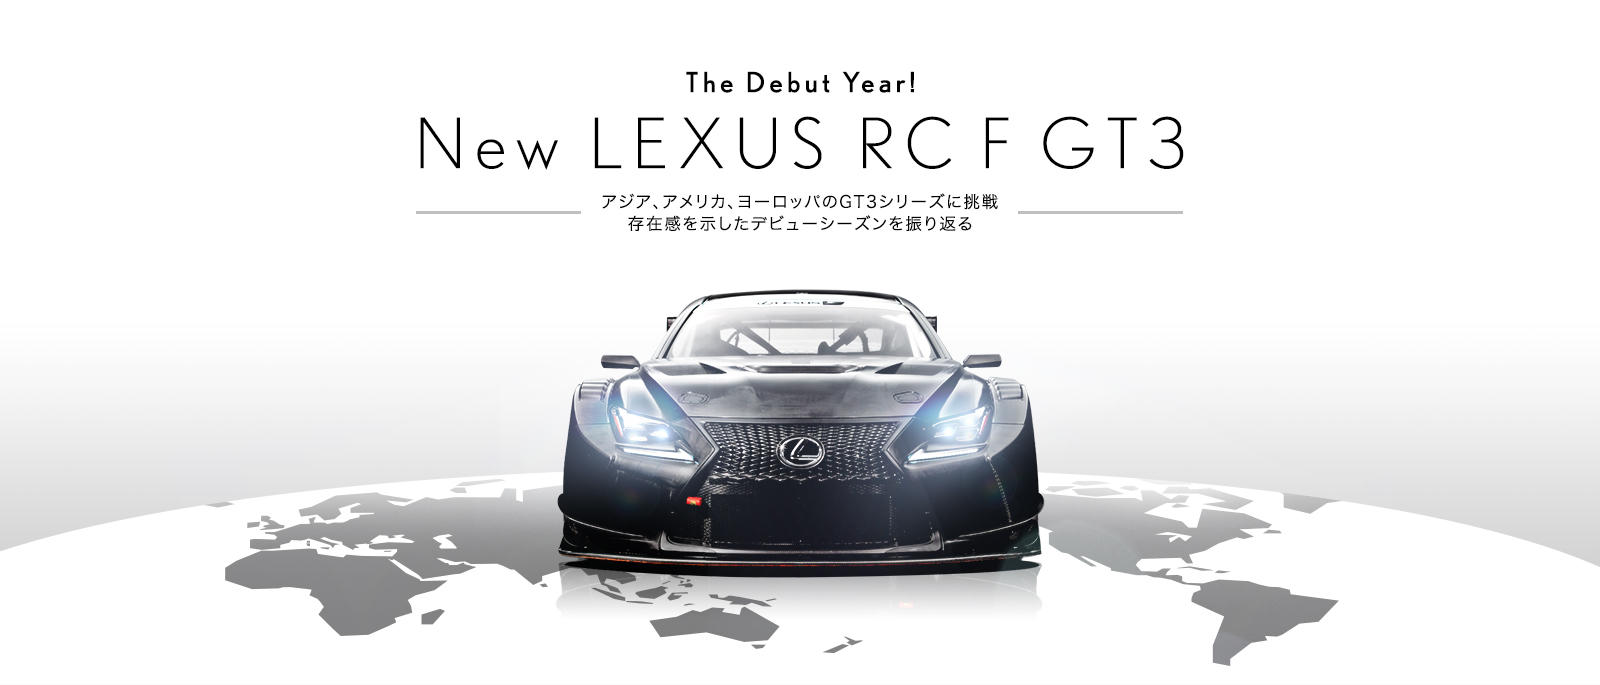 The Debut Year! New LEXUS RC F GT3 〜アジア、アメリカ、ヨーロッパのGT3シリーズに挑戦 存在感を示したデビューシーズンを振り返る〜